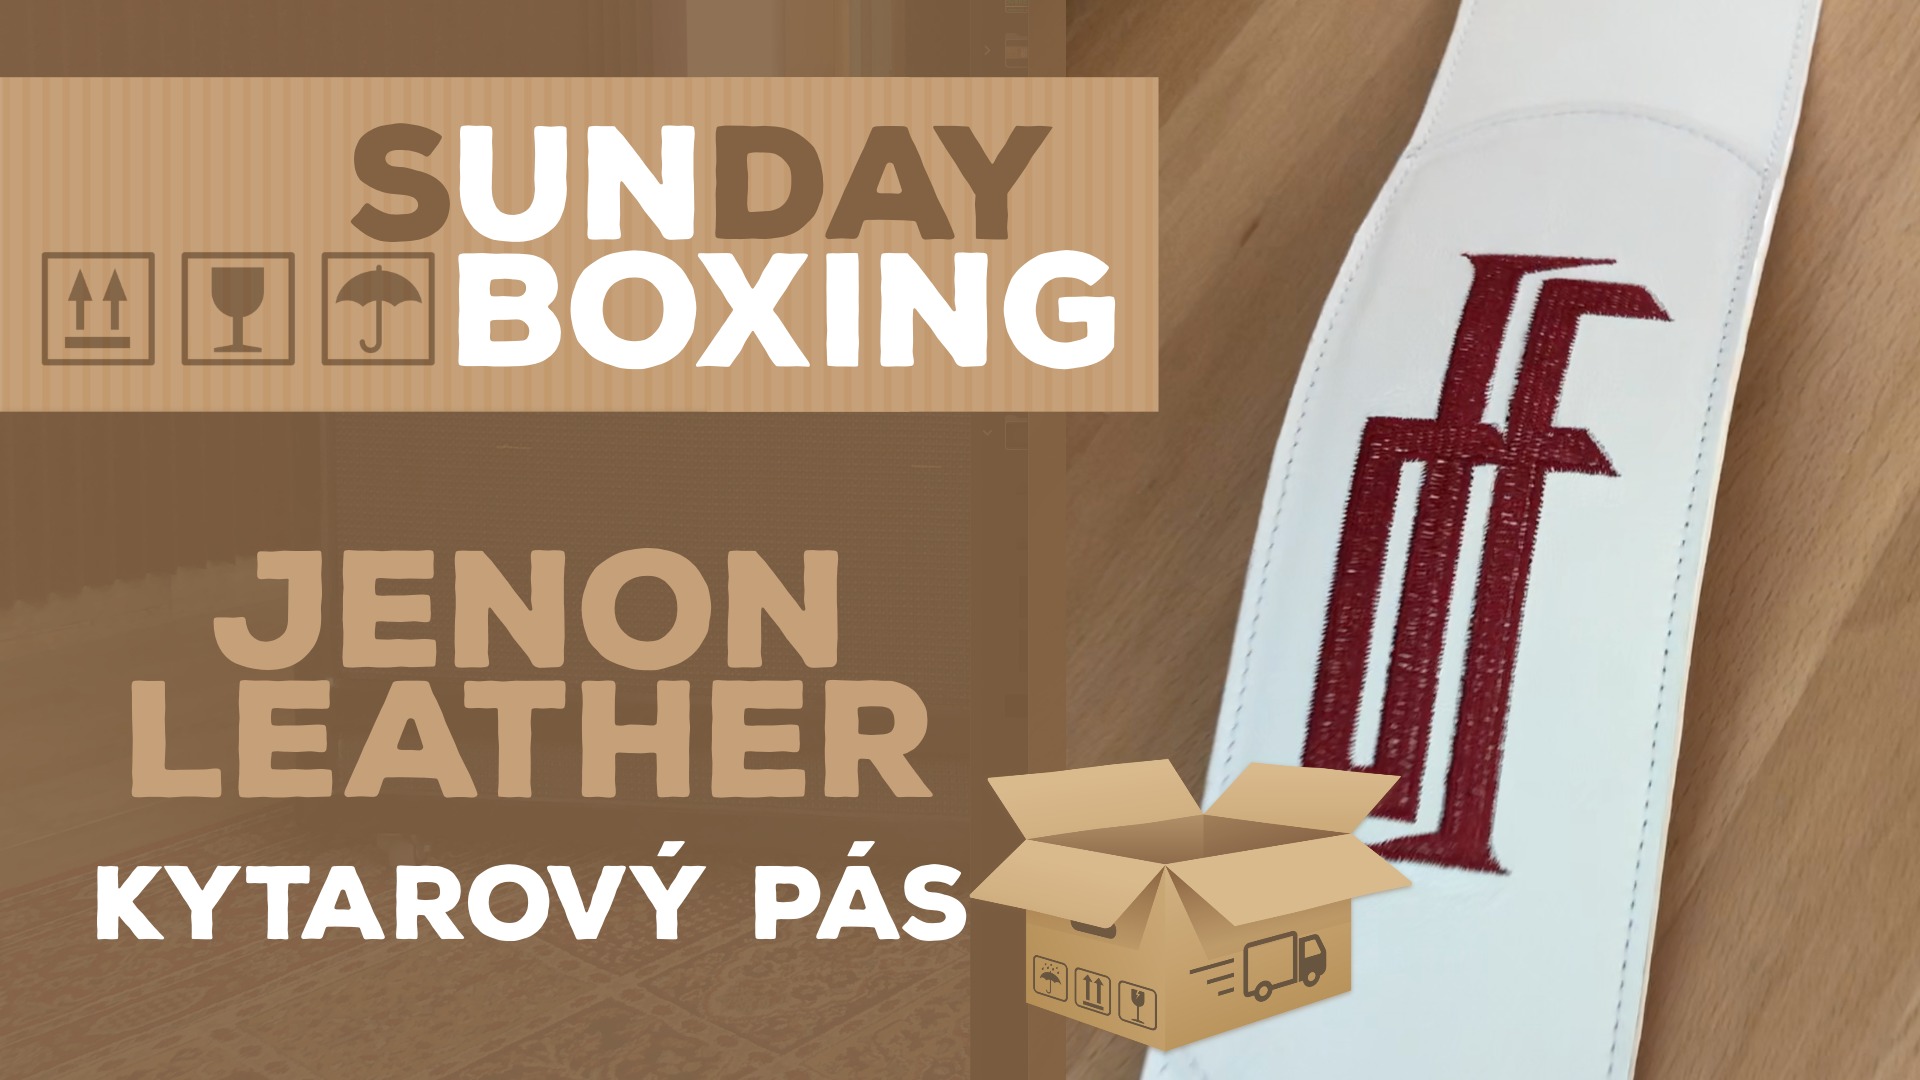 Sunday Unboxing - Kytarový pás od Jenon Leather